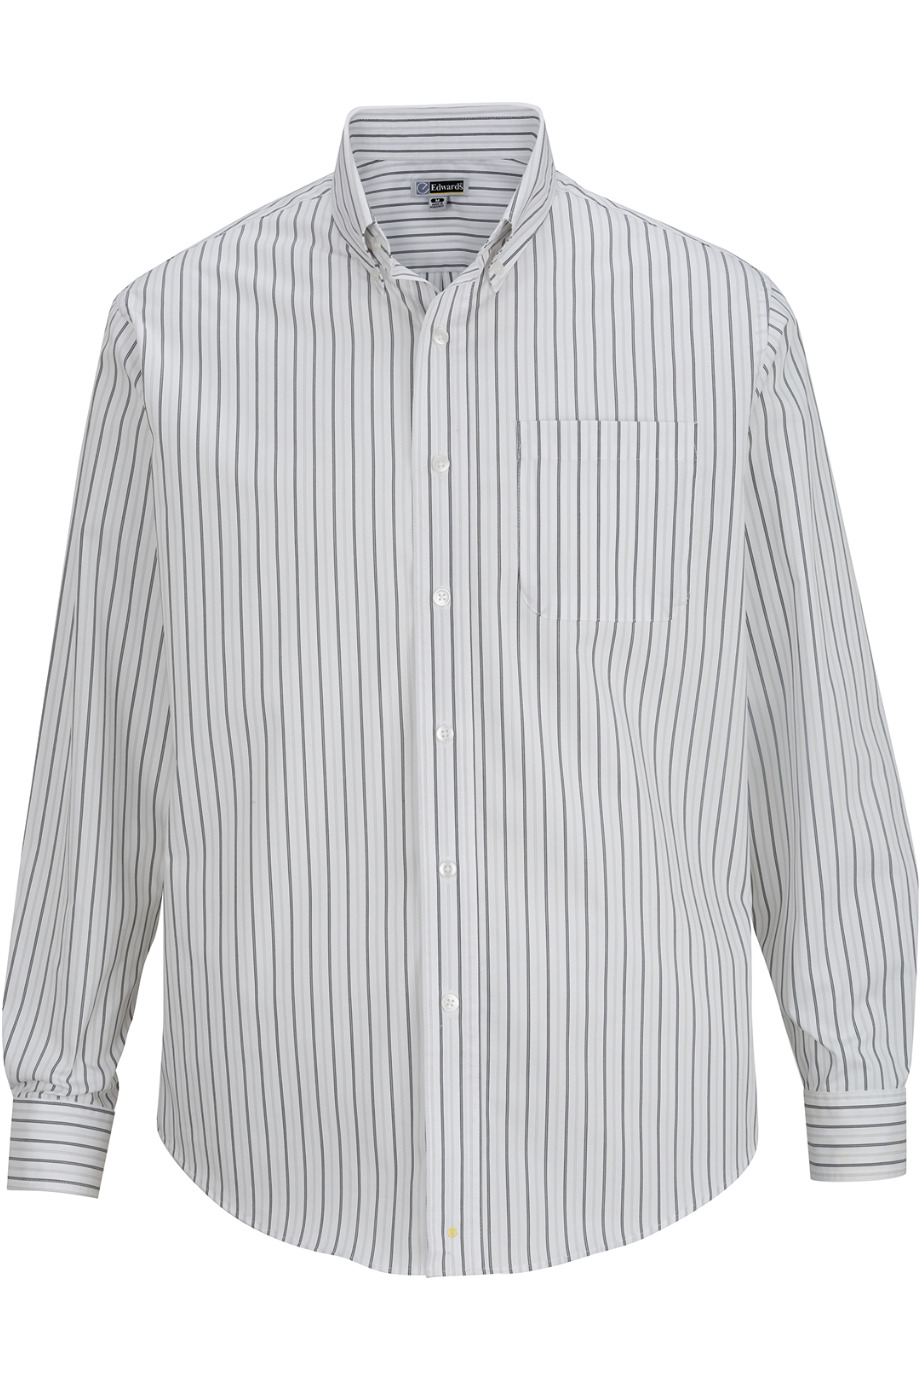 Edwards Garment 1983 - Men's Double Stripe Poplin